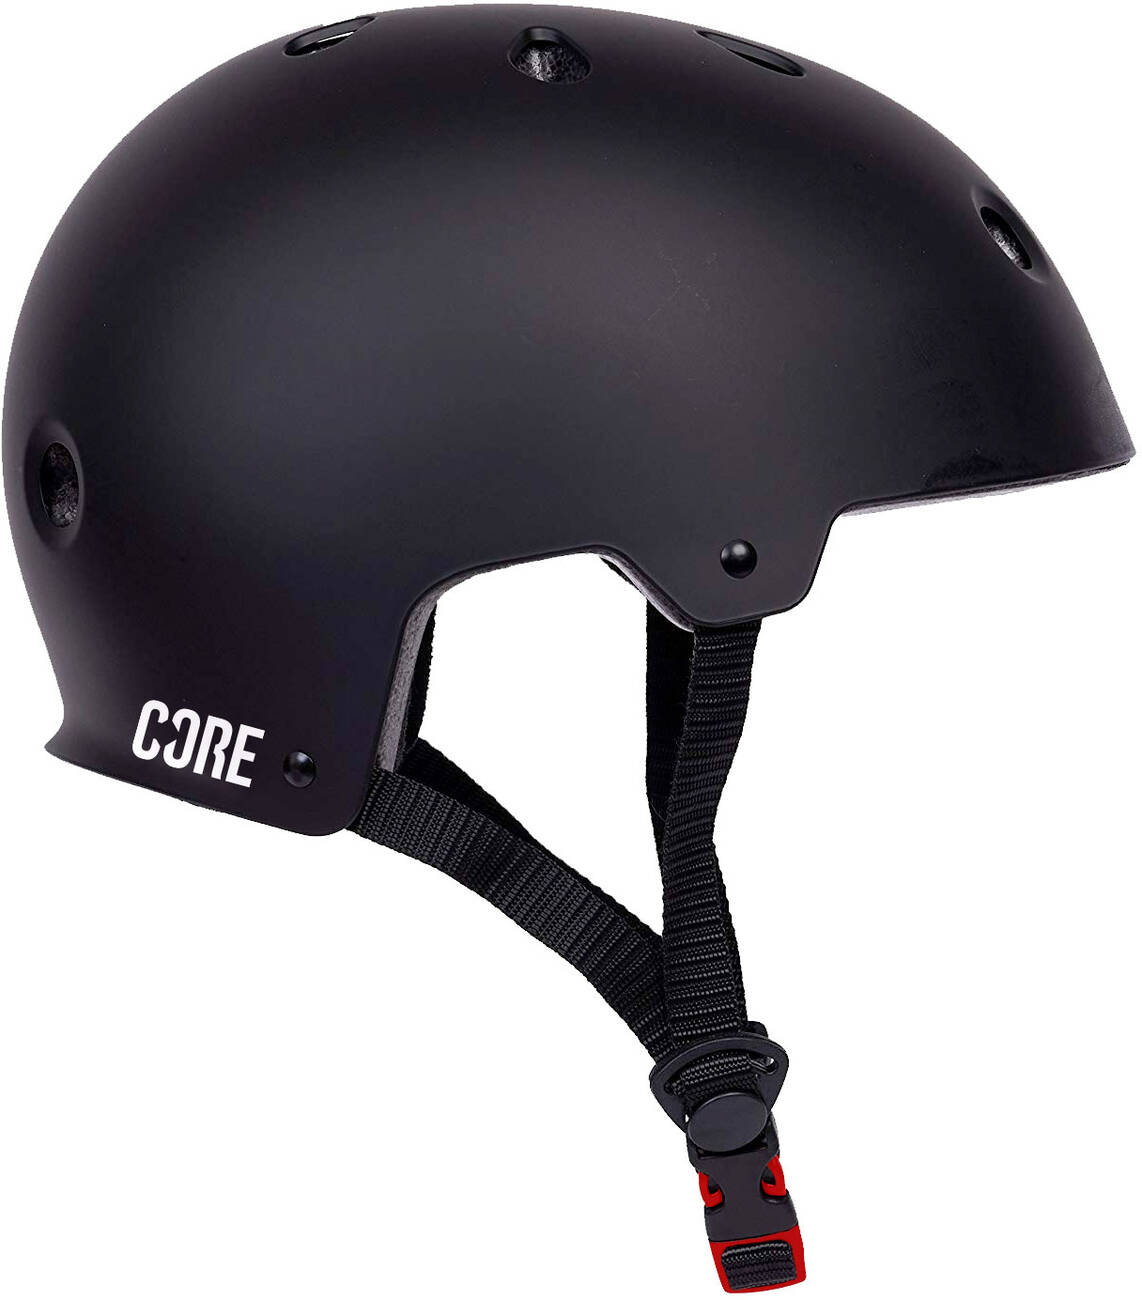 Skate &amp; bike helmet